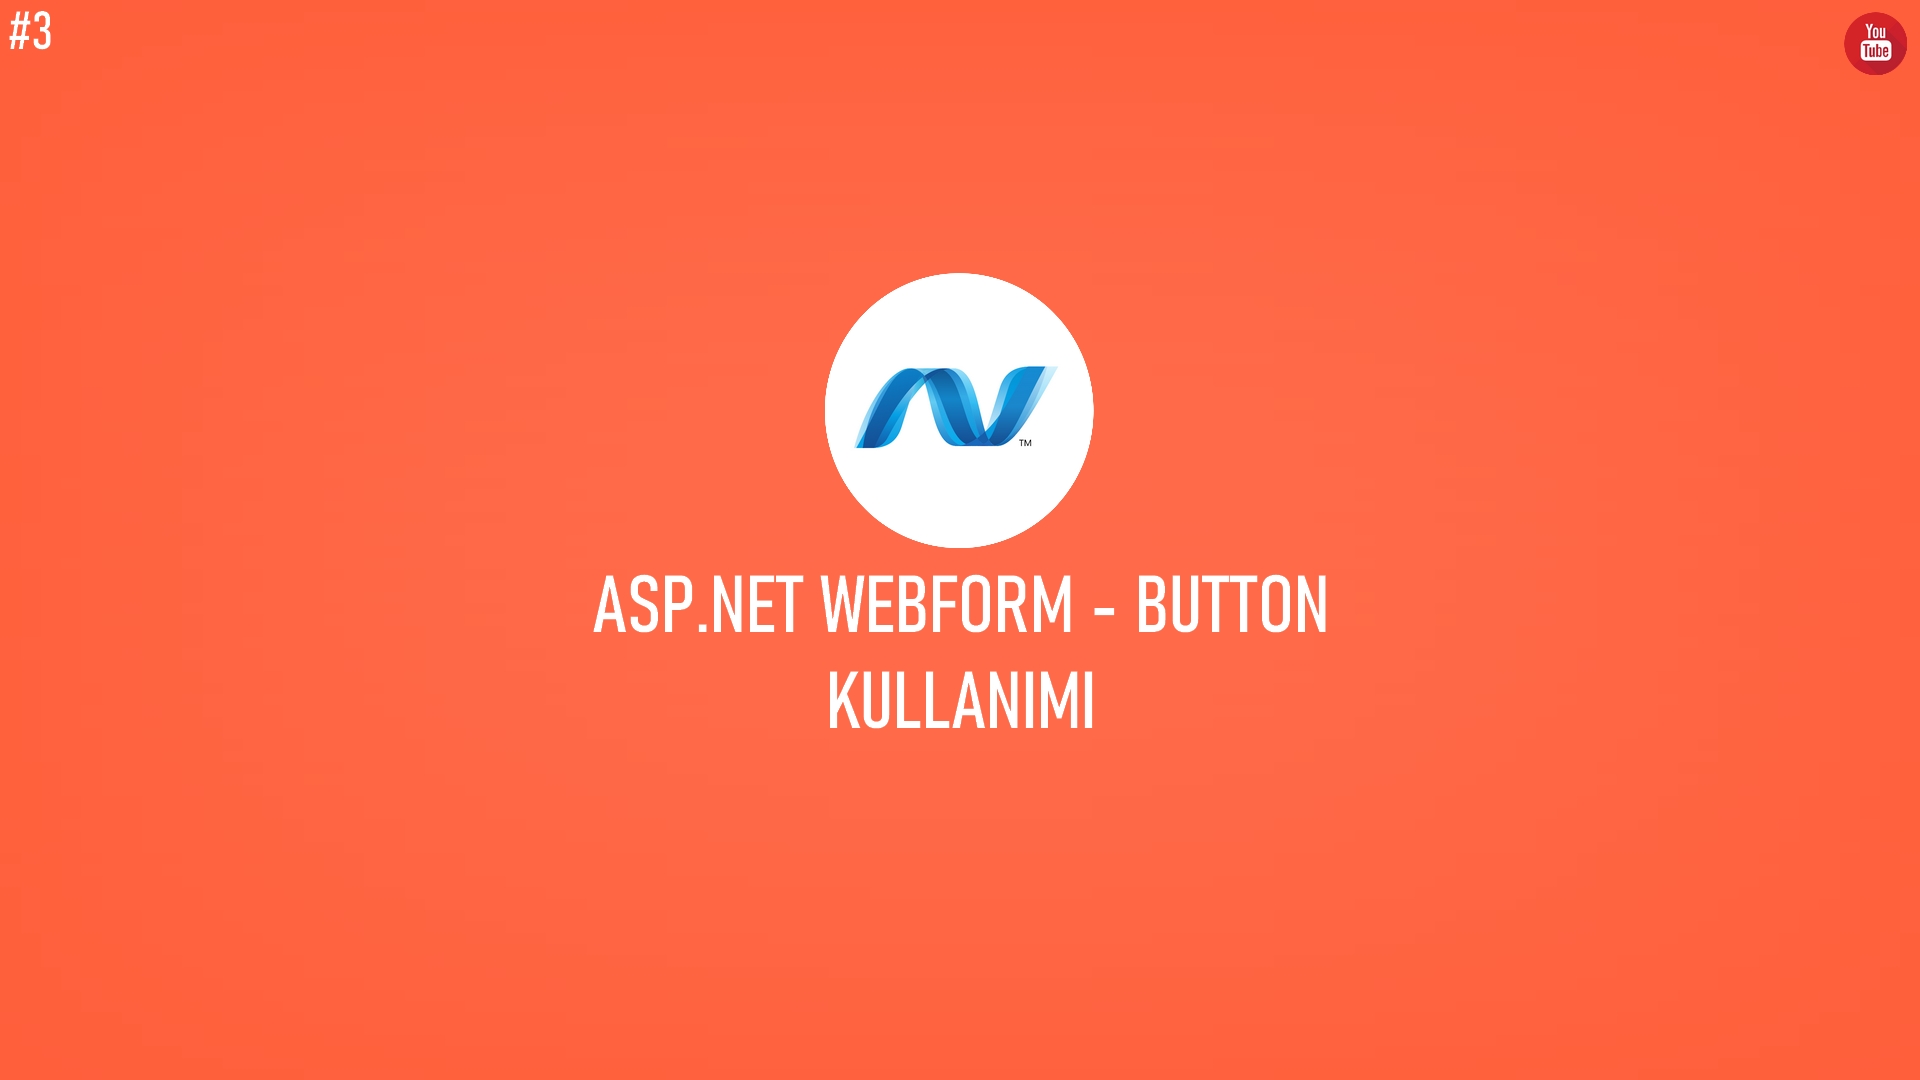 C# ASP.NET WebForm - Button Kullanımı (Video İçerik) başlıklı içeriğin kapak resmi.